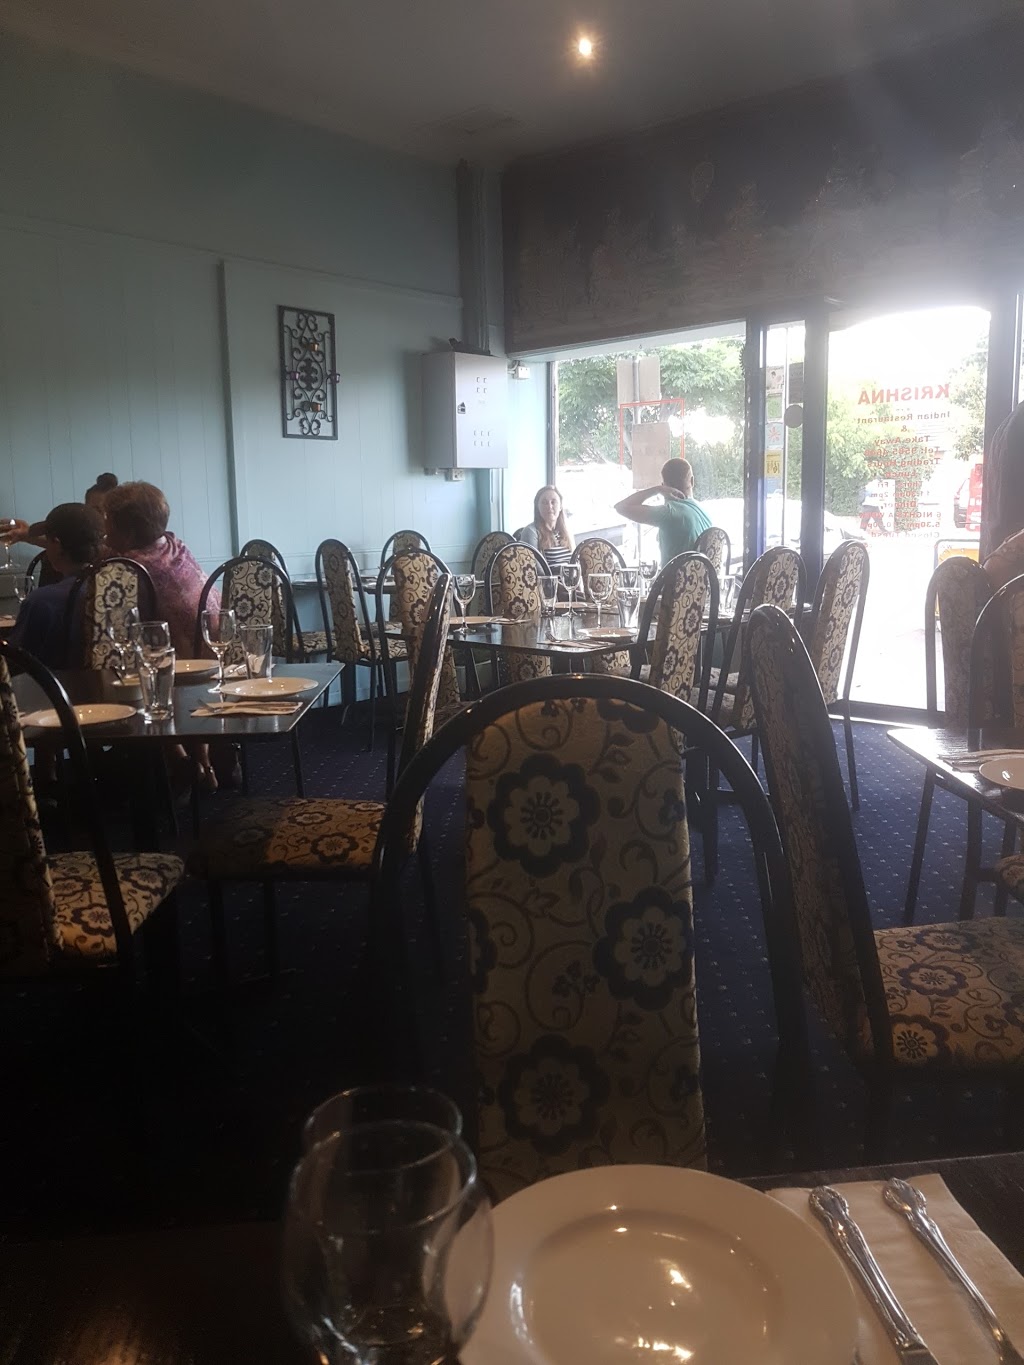 Krishna Indian Restaurant & Take Away | restaurant | 362 Bay Rd, Cheltenham VIC 3192, Australia | 0395854648 OR +61 3 9585 4648